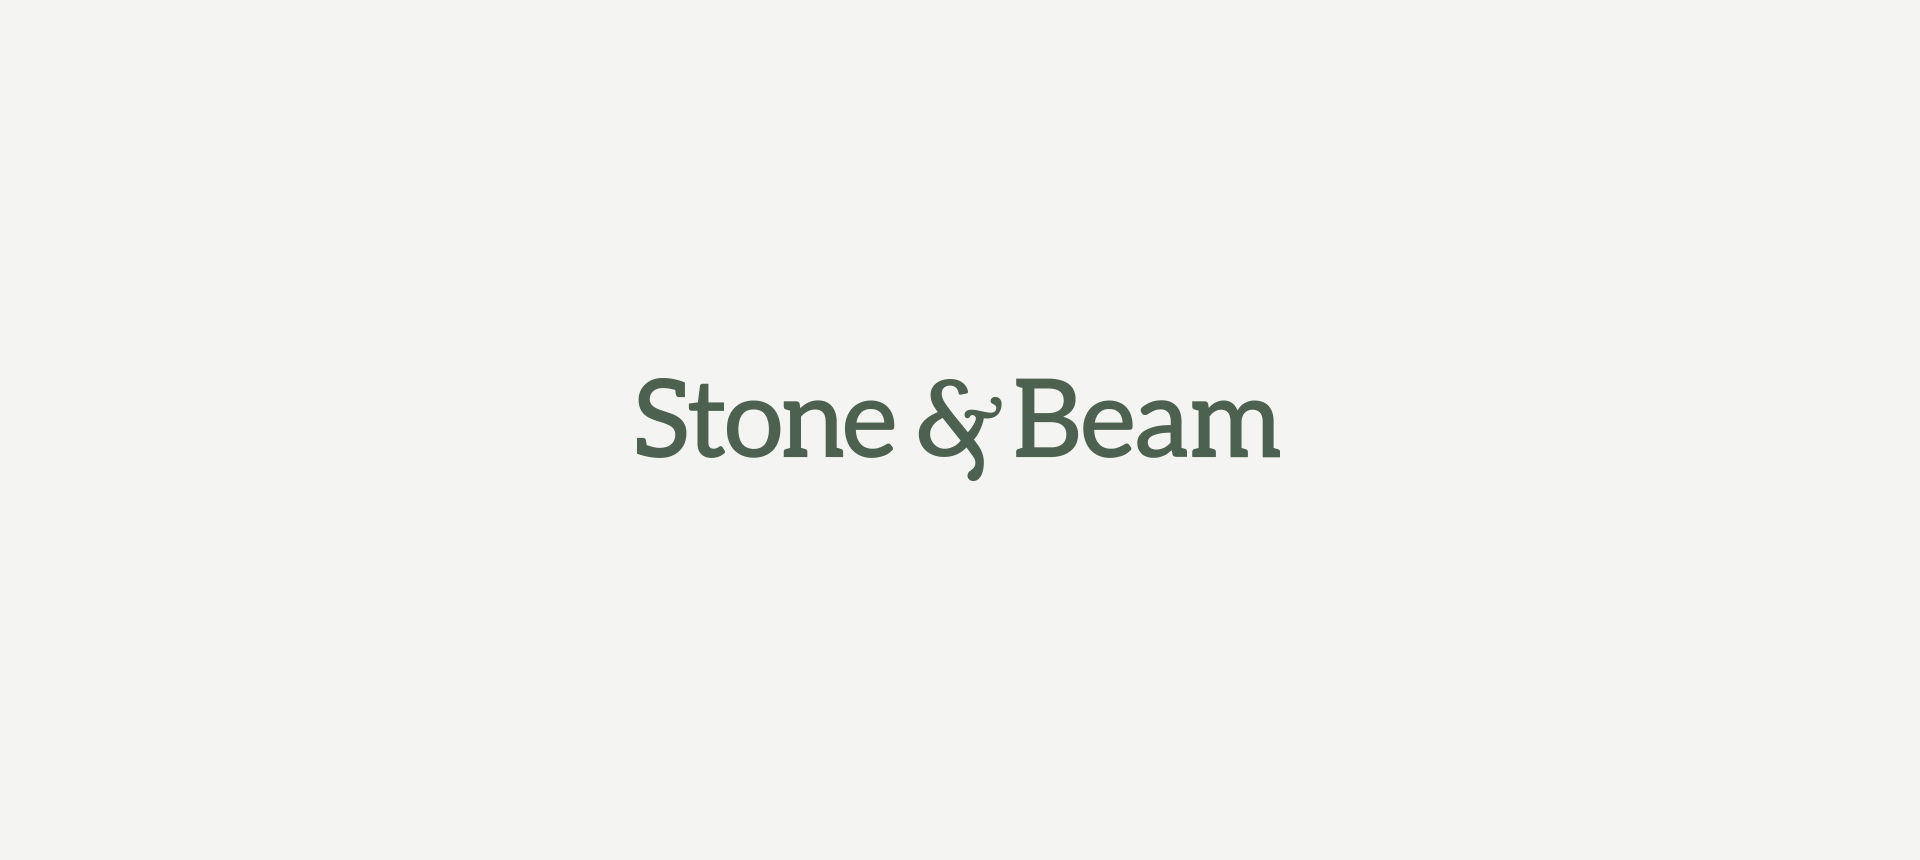 stoneandbeam_logos_1